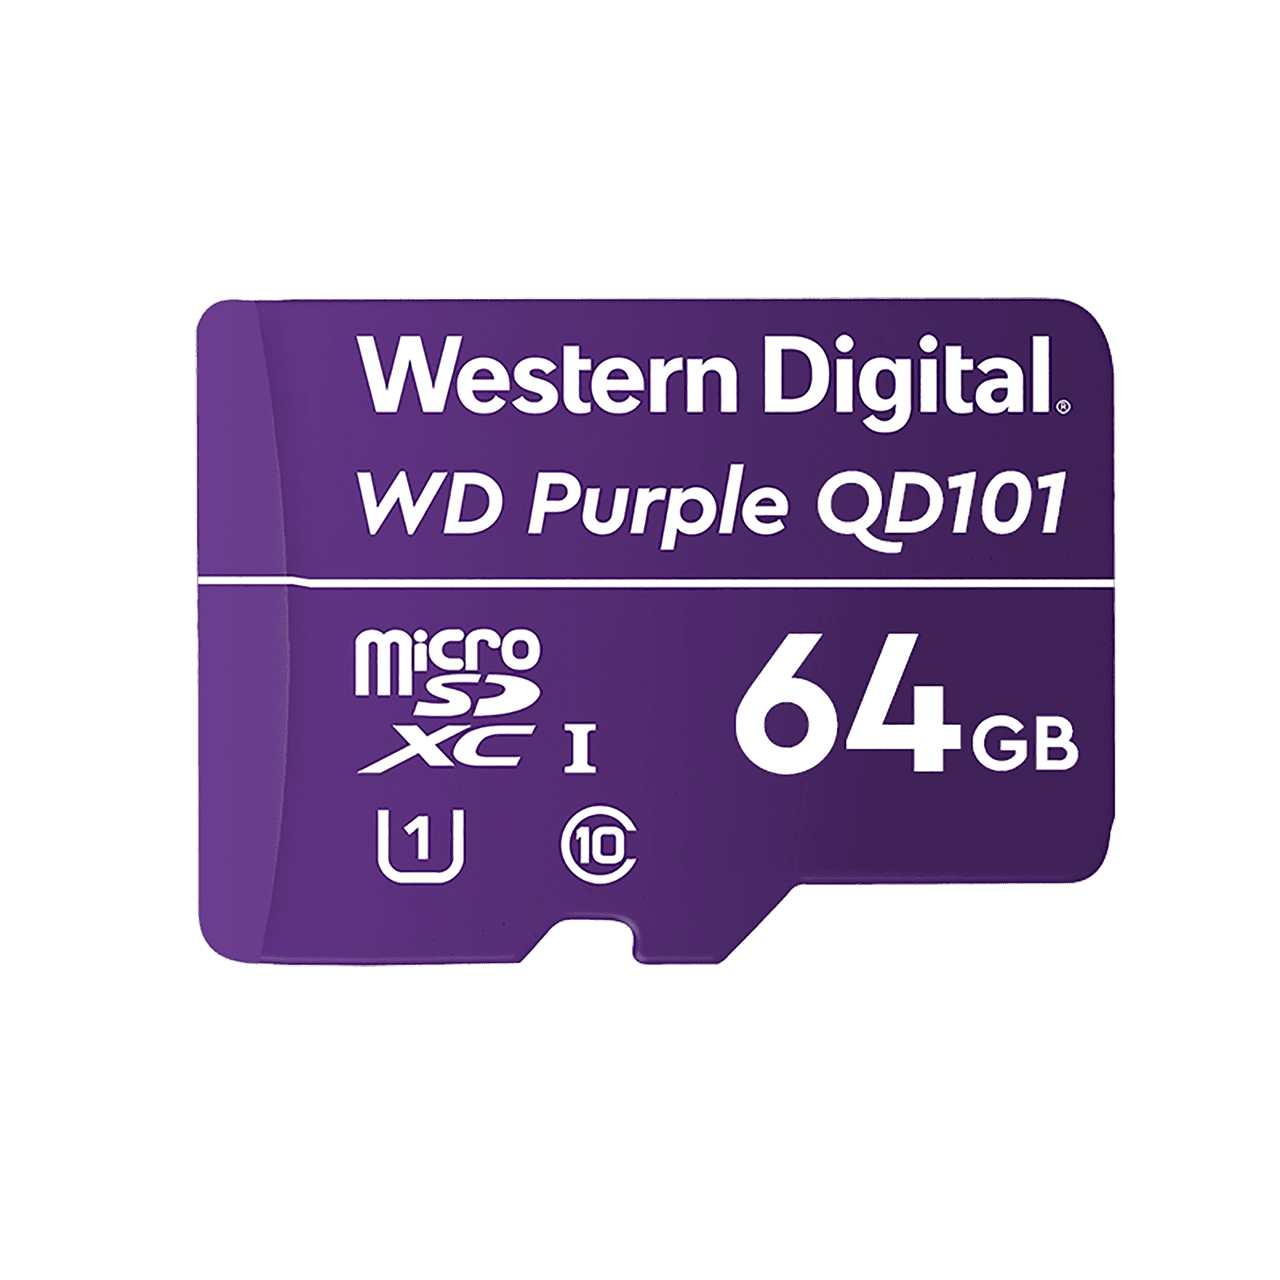 MEMORIA WD PURPLE MICRO SDXC 64GB CL10 U1 QD101 (WDD064G1P0C)